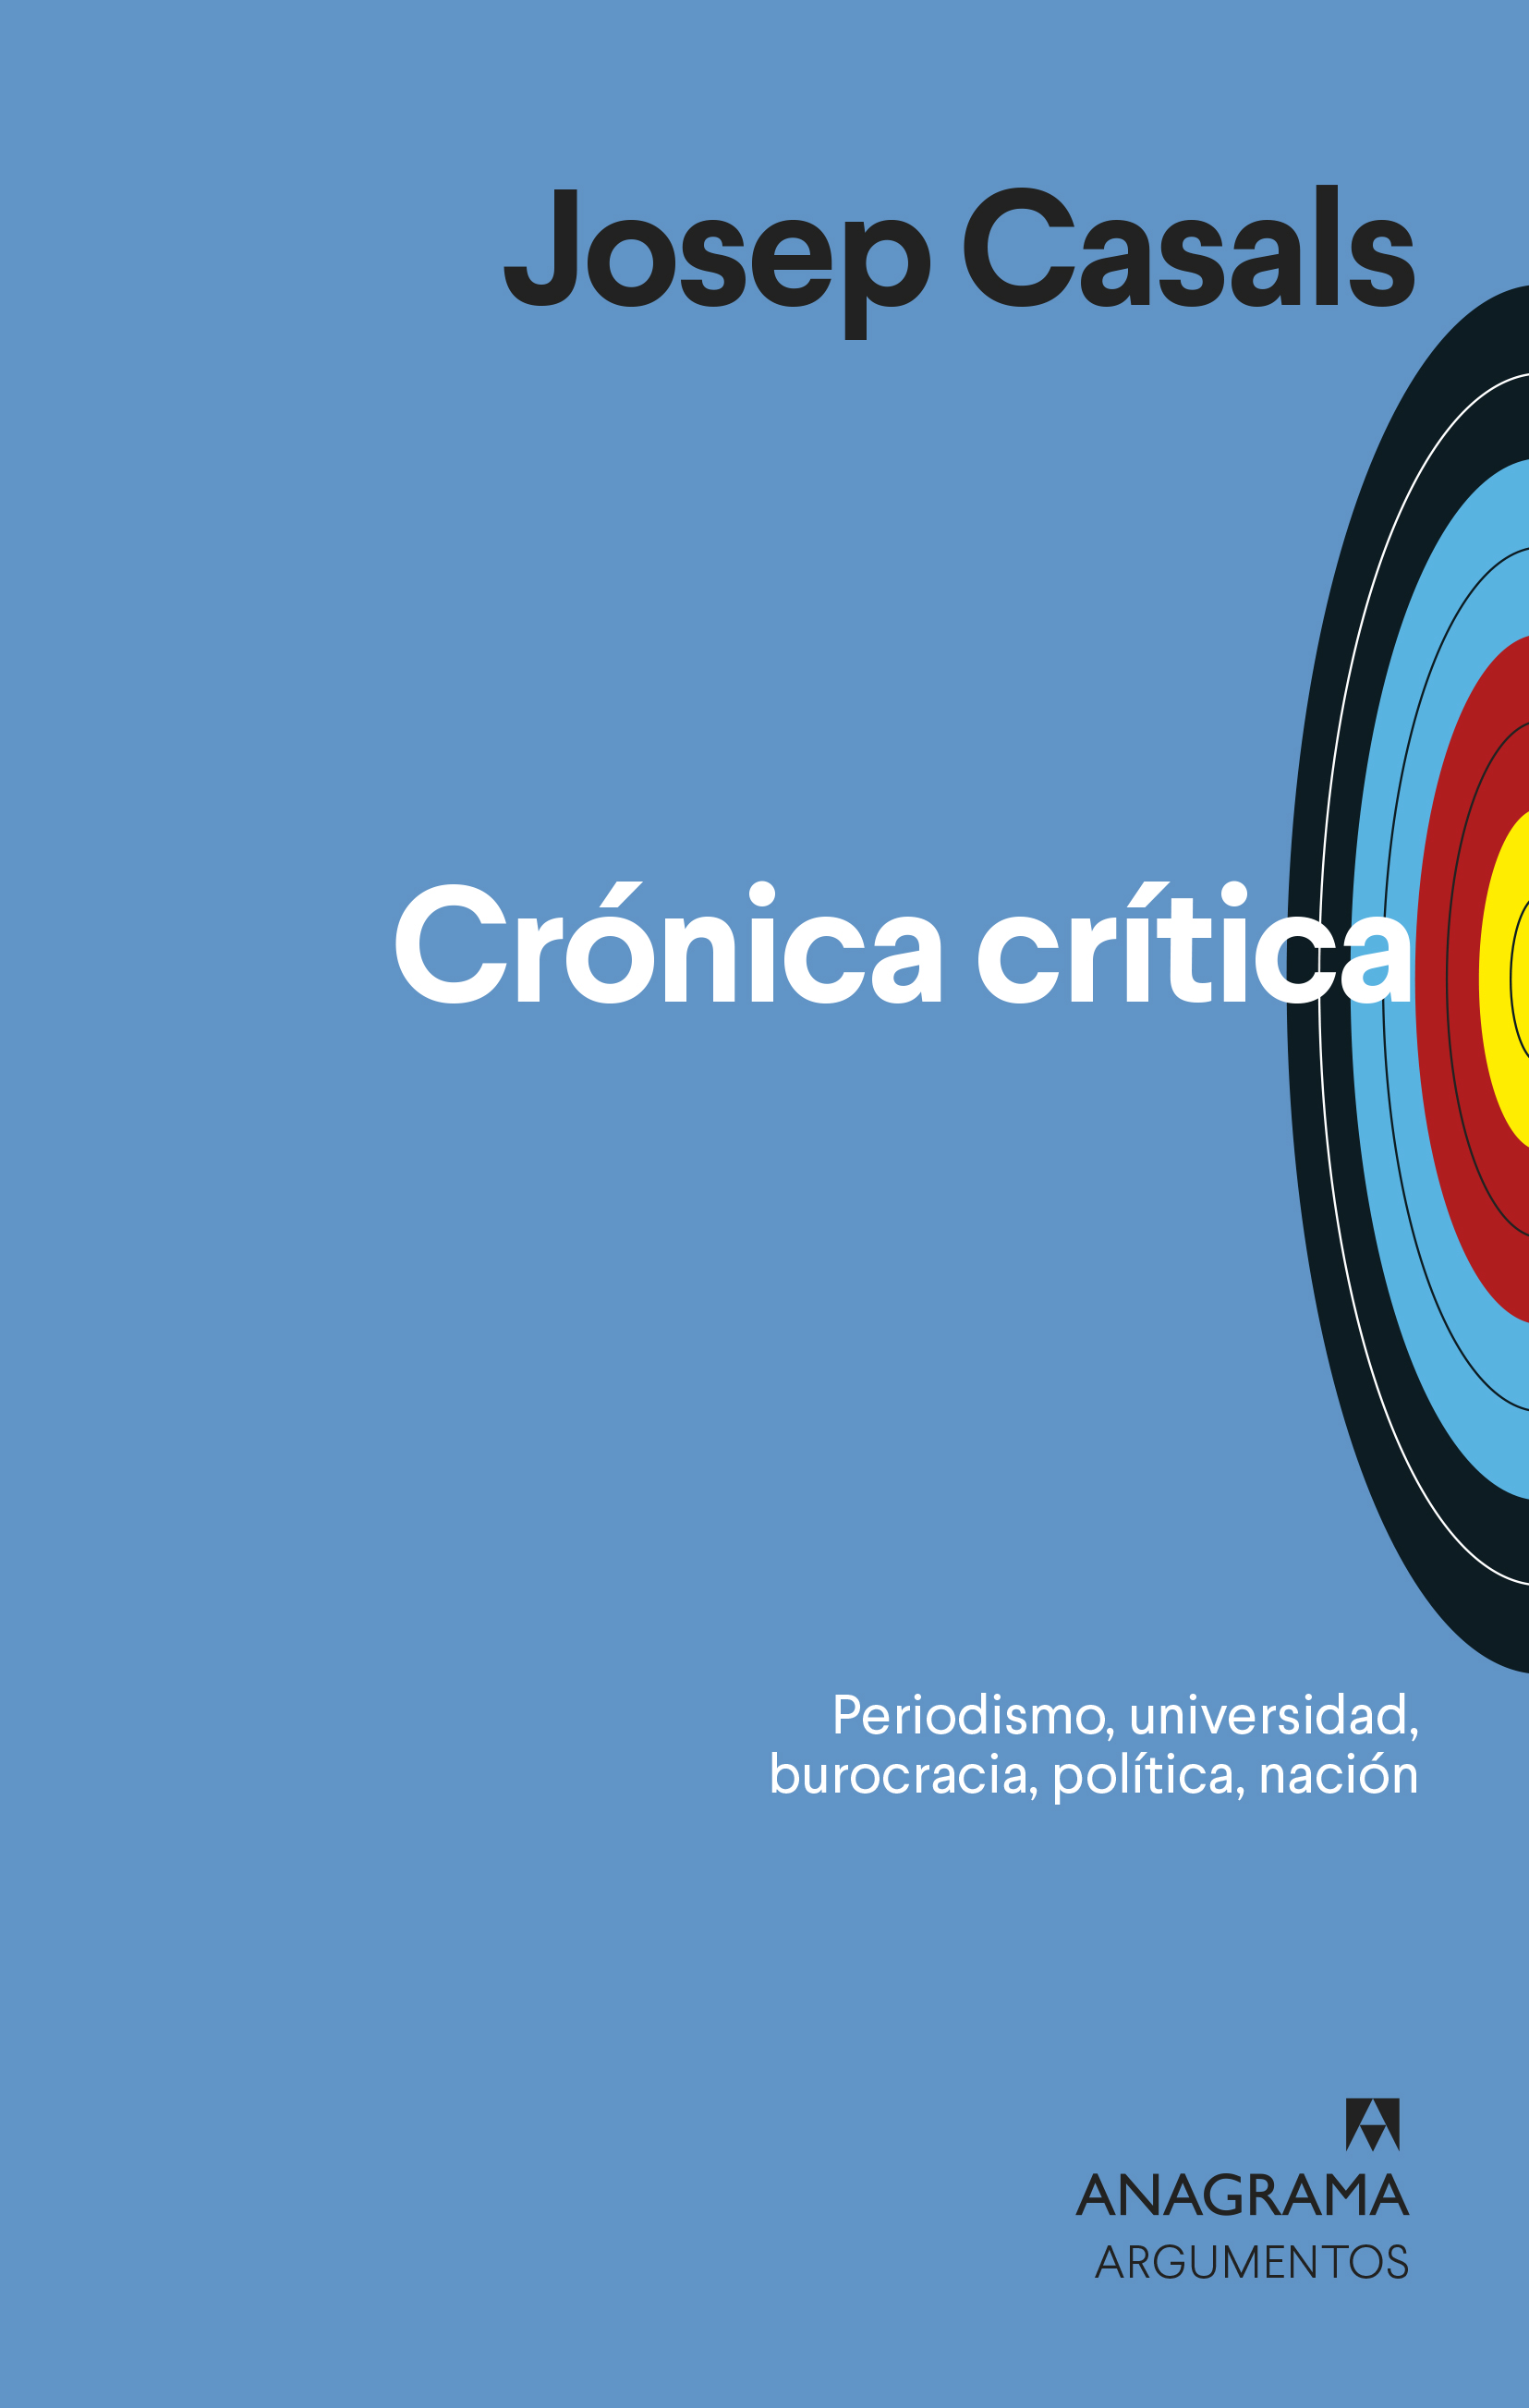 Zenda recomienda: Crónica crítica, de Josep Casals